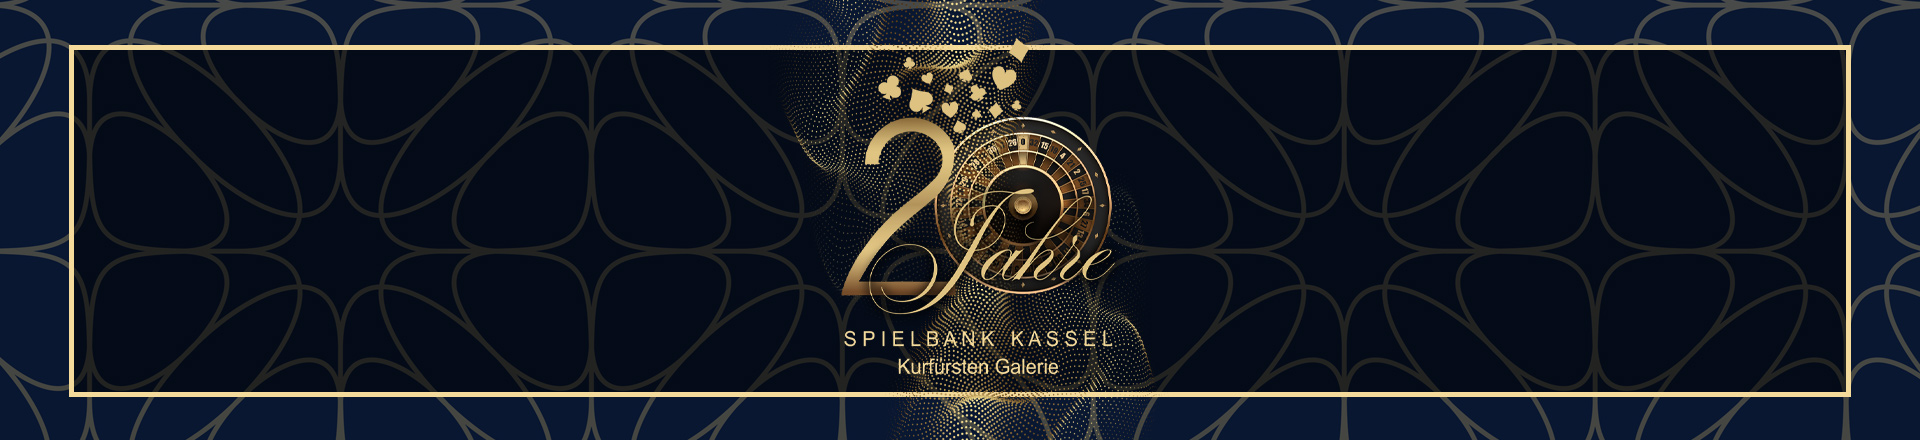 20 Jahre Spielbank Kassel